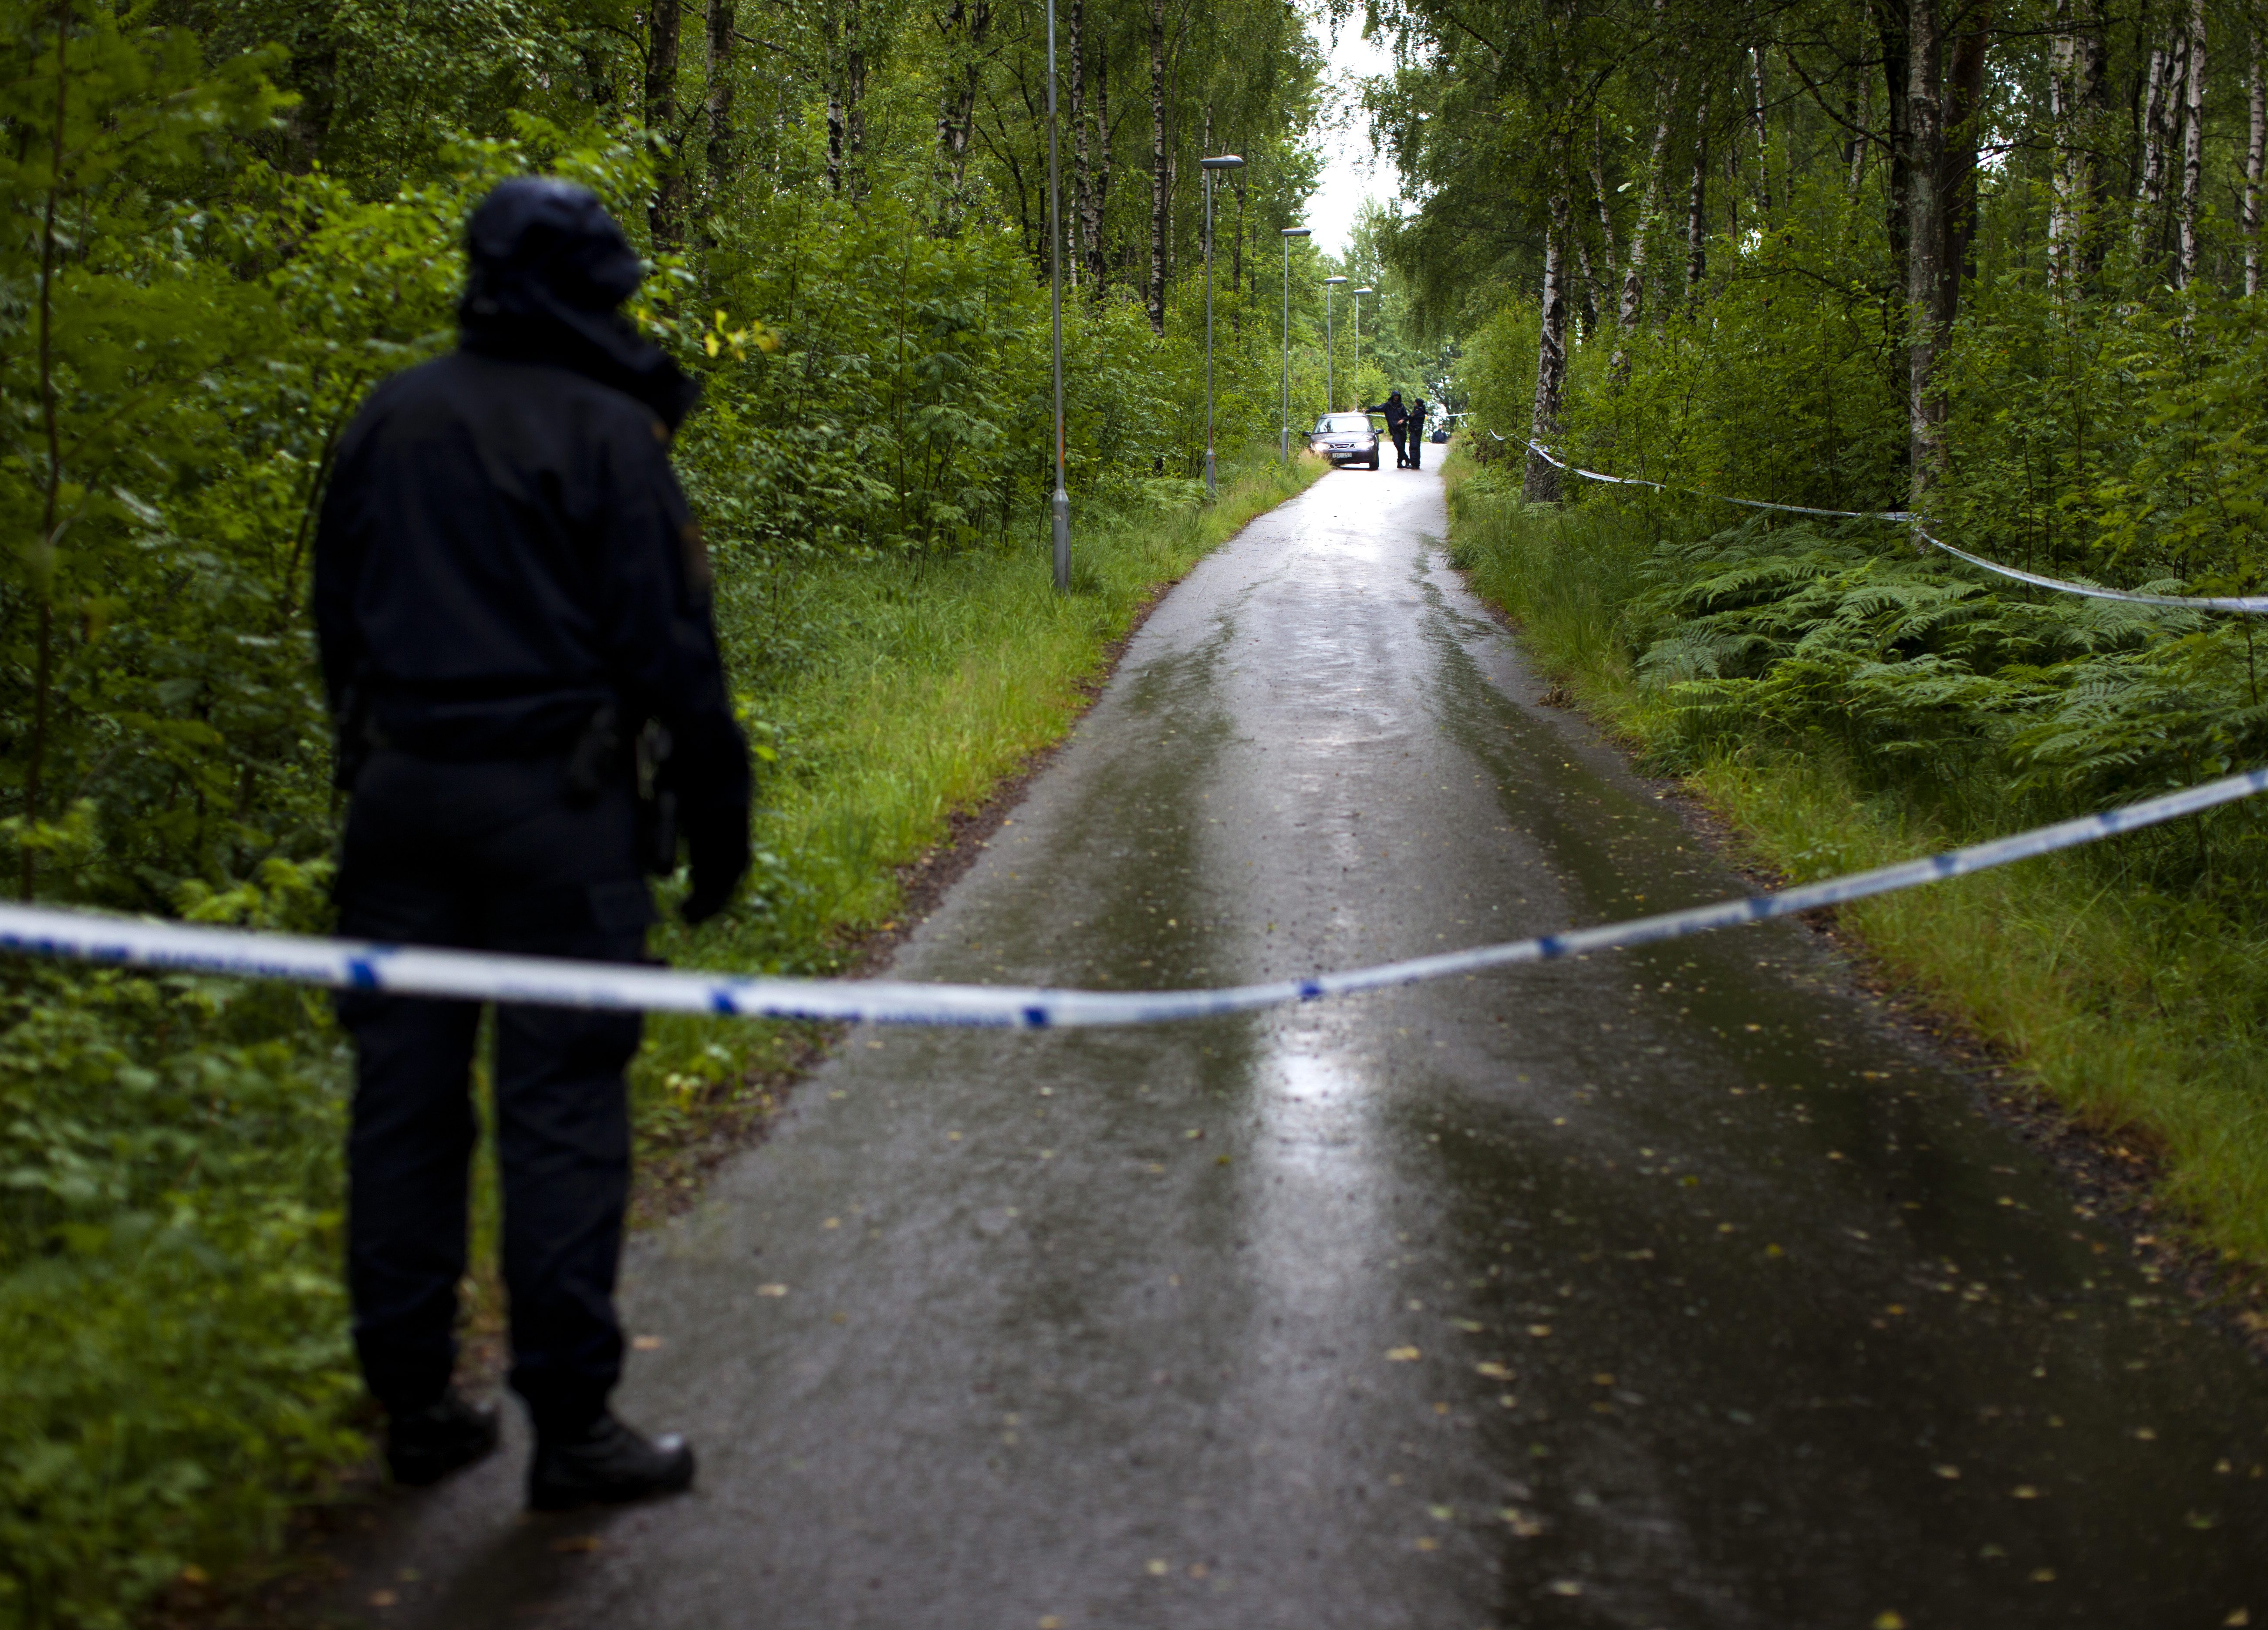  En man ringde på torsdagseftermiddagen till polisen i Västra Götaland och uppgav att han hade tagit livet av en person. Polisen spärrade av ett skogsområde på Hisingen och sökte efter en kropp.